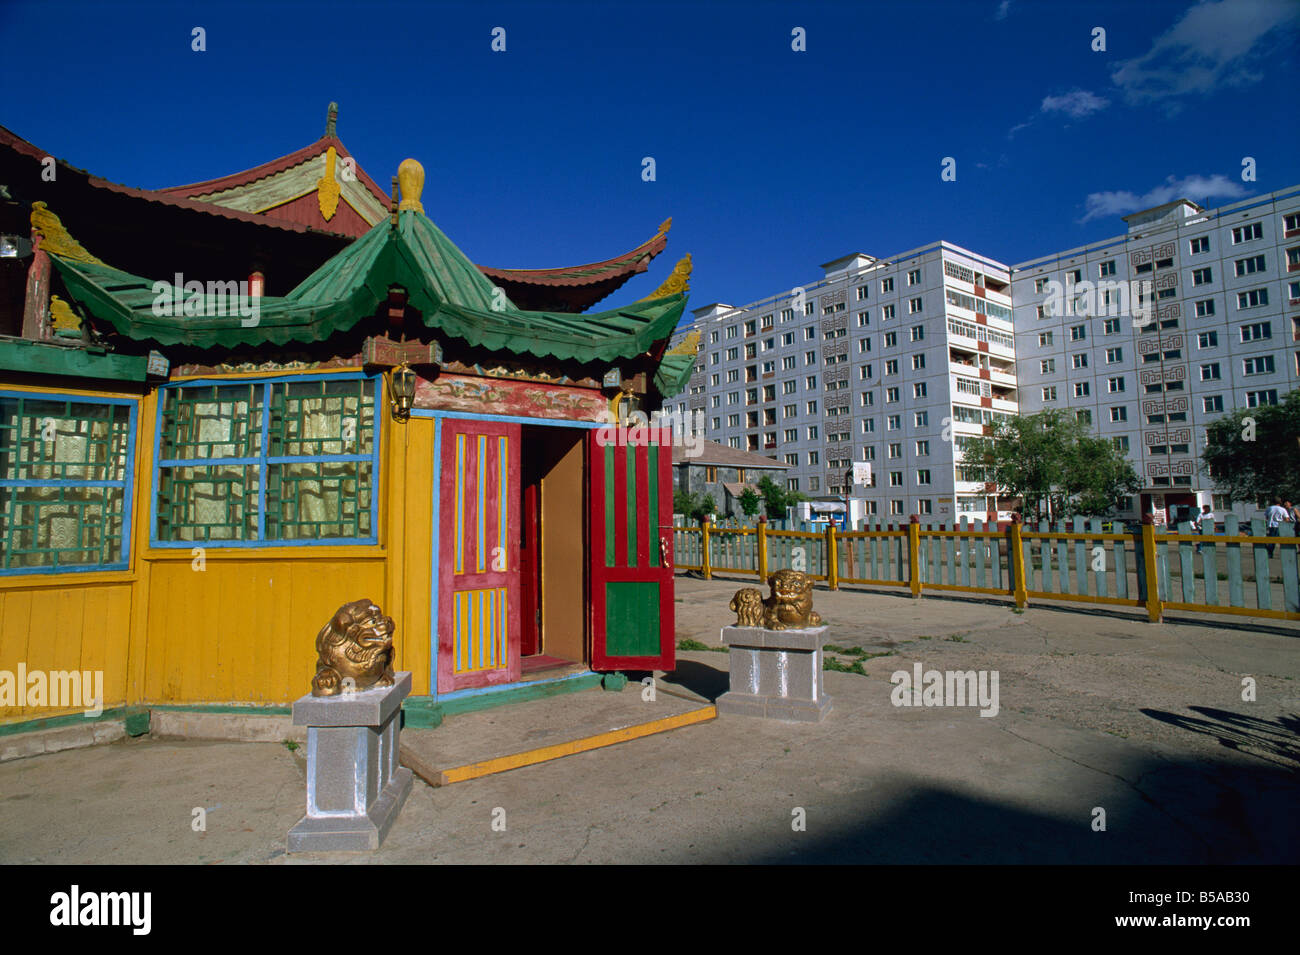 Il ristorante pagoda di stile, centro città, Ulan Bator, Tov, Mongolia, Asia centrale Foto Stock